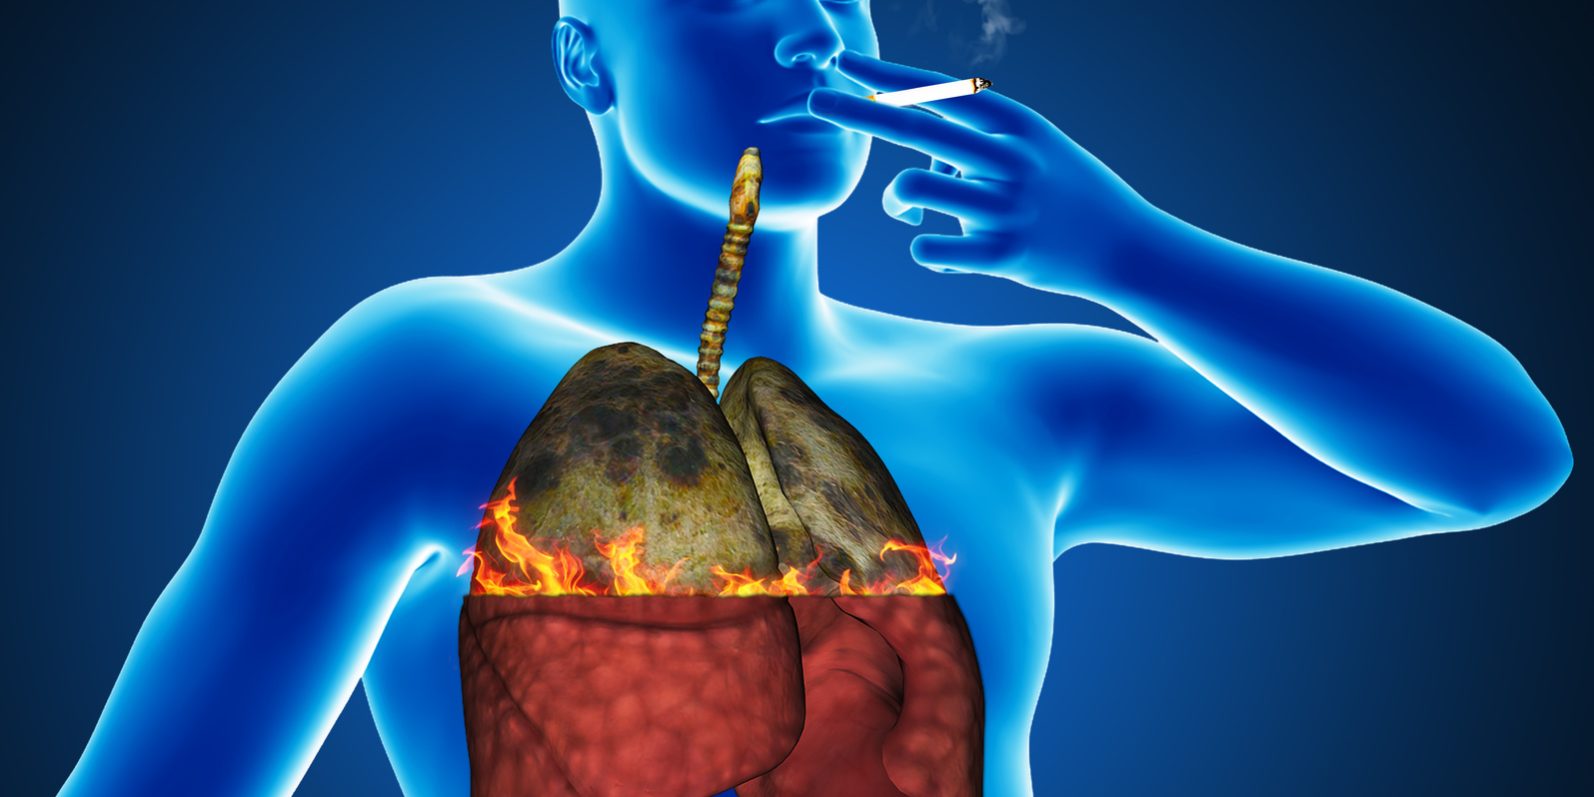 Заболевание курящих людей. Здоровый организм человека. Органы дыхания при курении. Лёгкие пассивного курильщика.